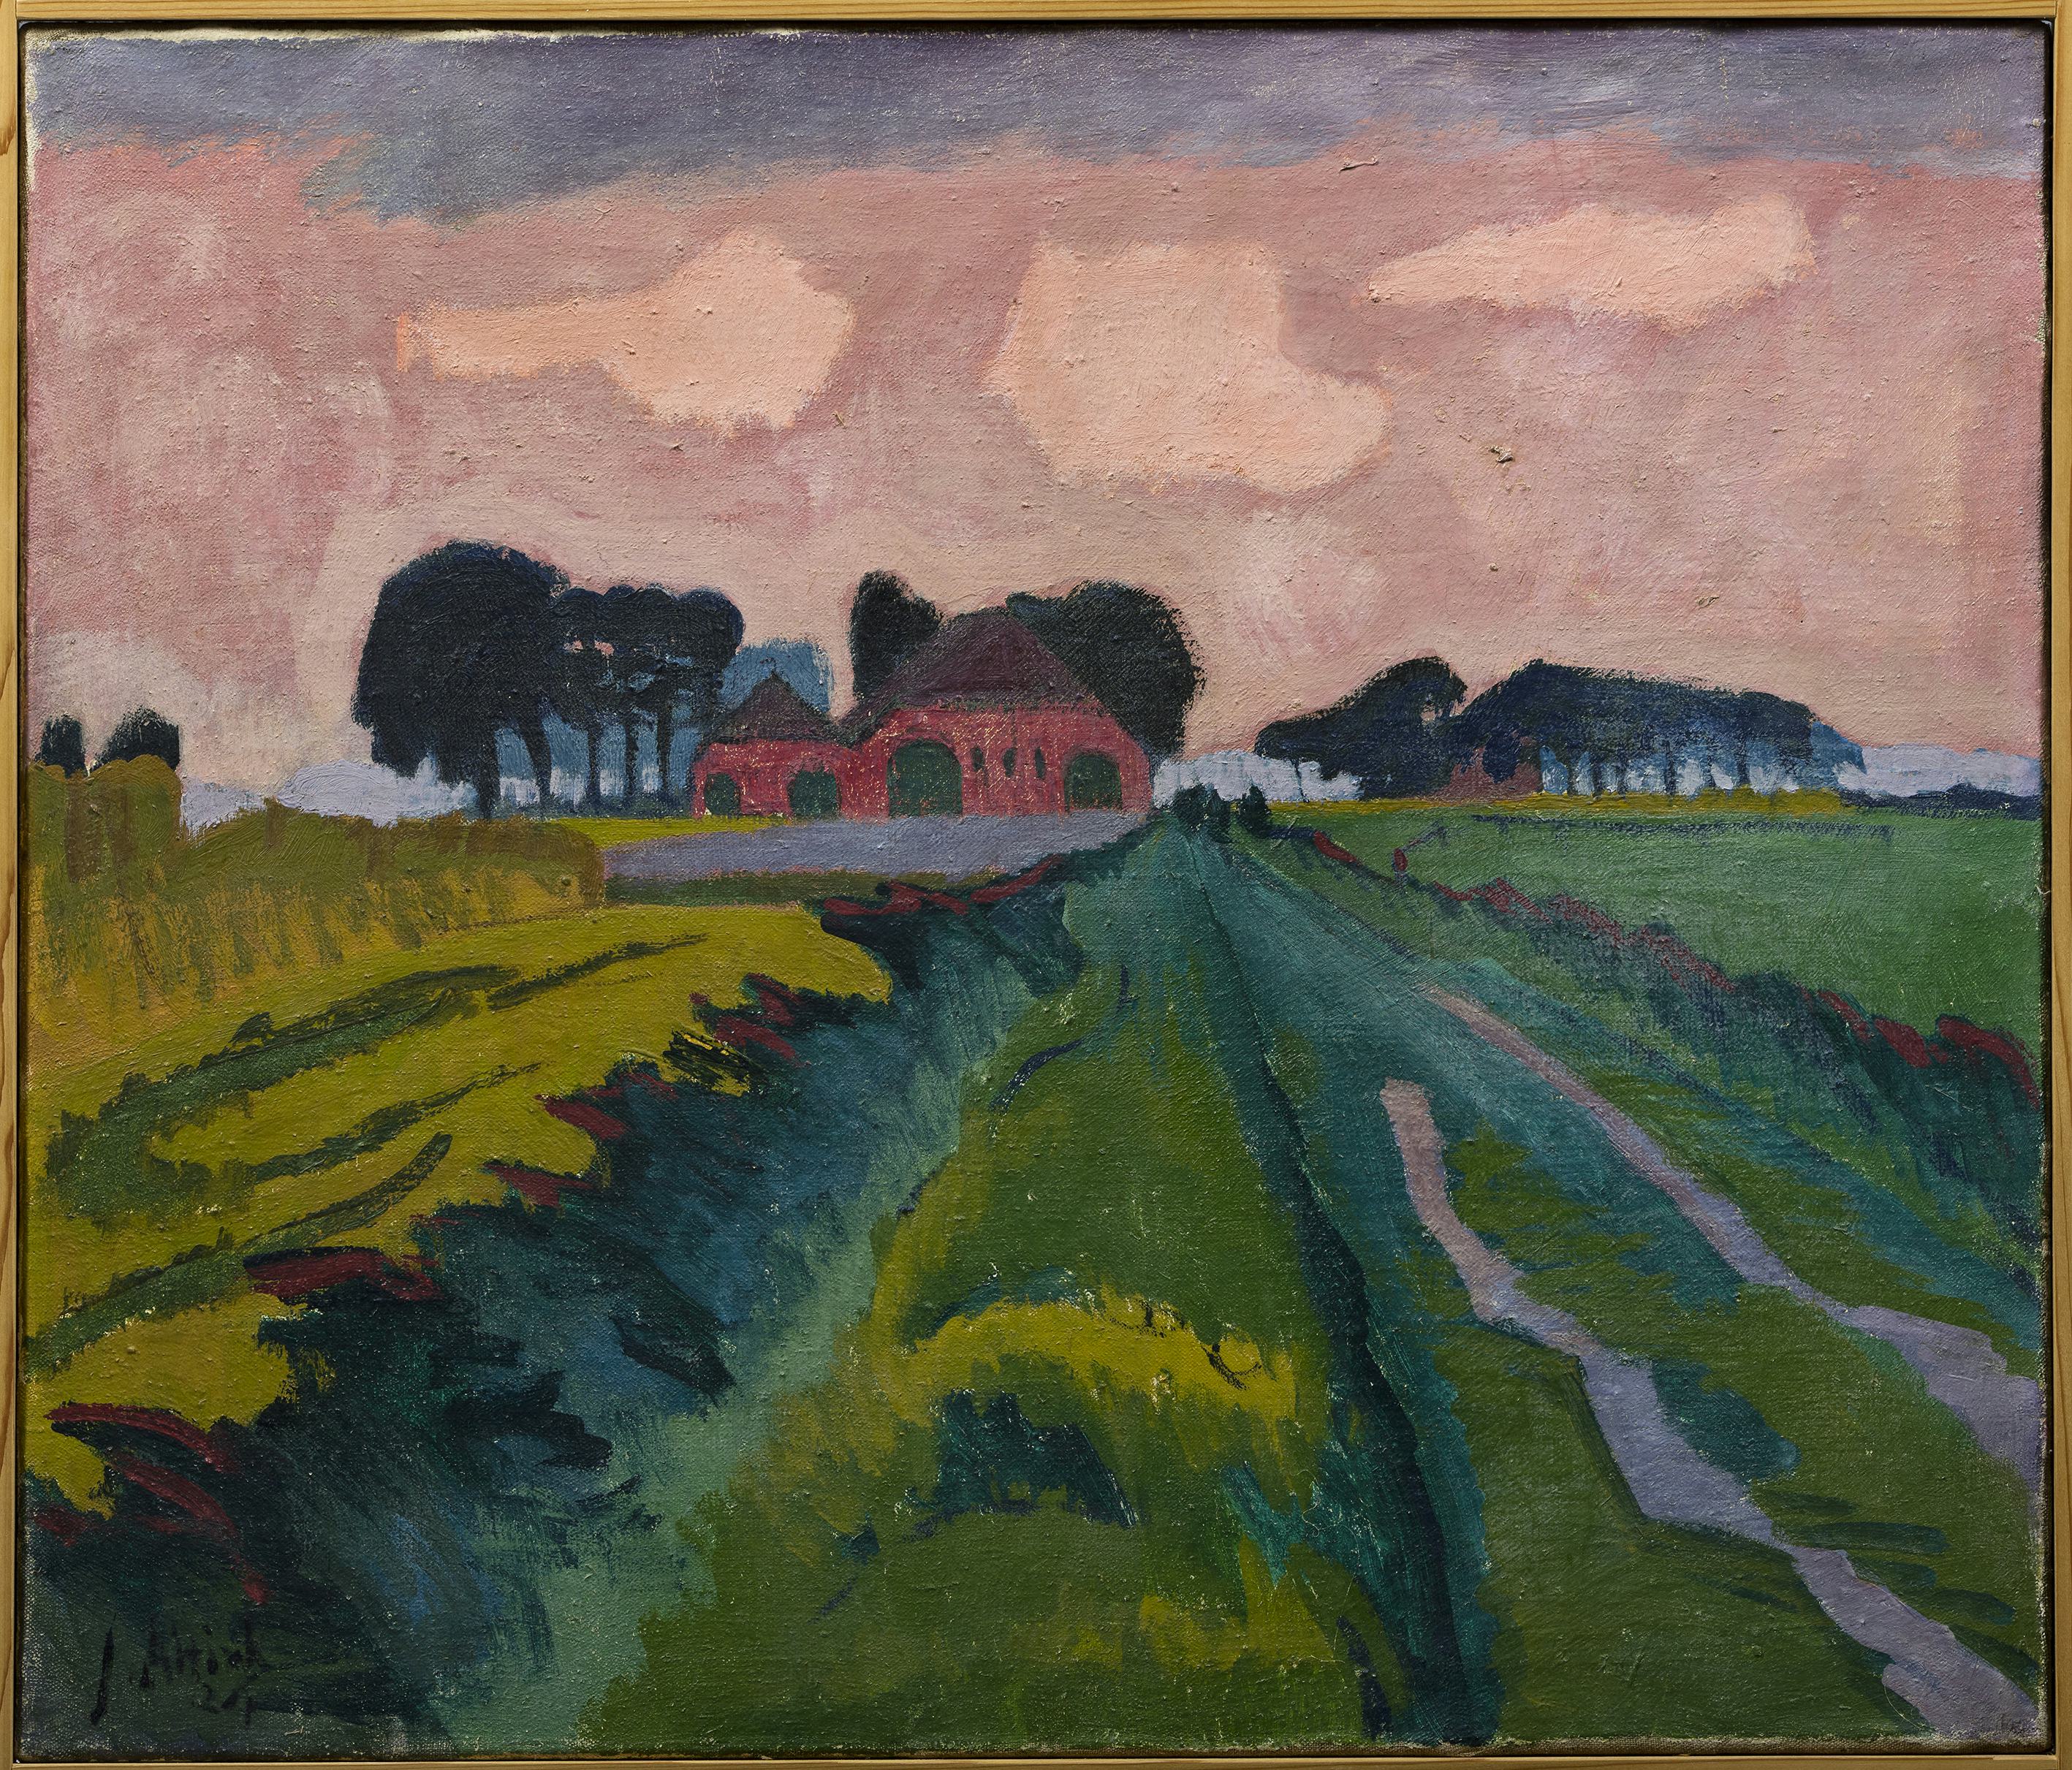 Jan Altink, De rode boerderij, 1926, was/olieverf op canvas, 60,5 x 70, 5 cm, Collectie Stichting De Ploeg, bruikleen Groninger Museum